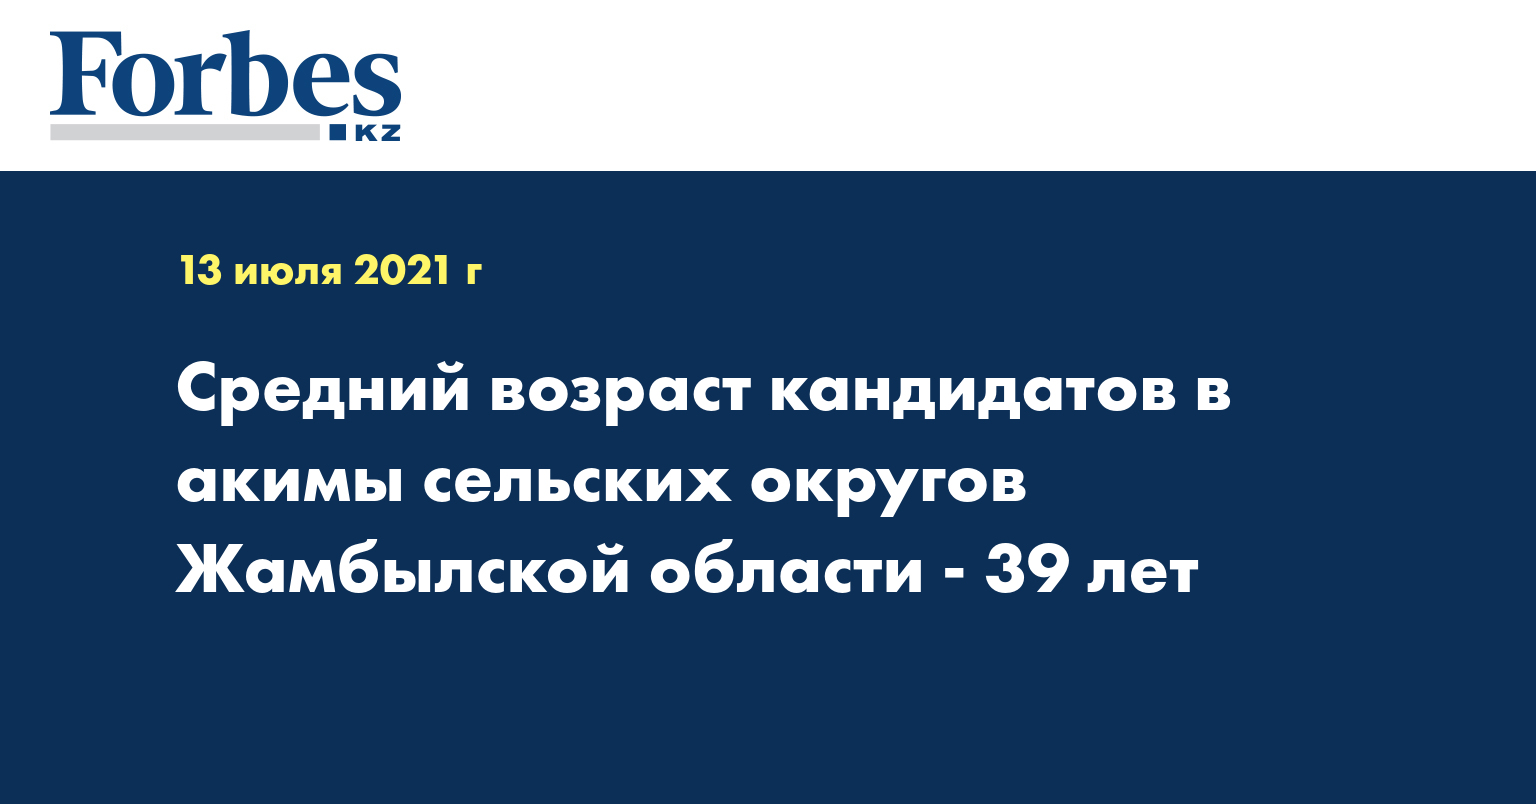 Средний возраст кандидатов в акимы сельских округов Жамбылской области 39 лет